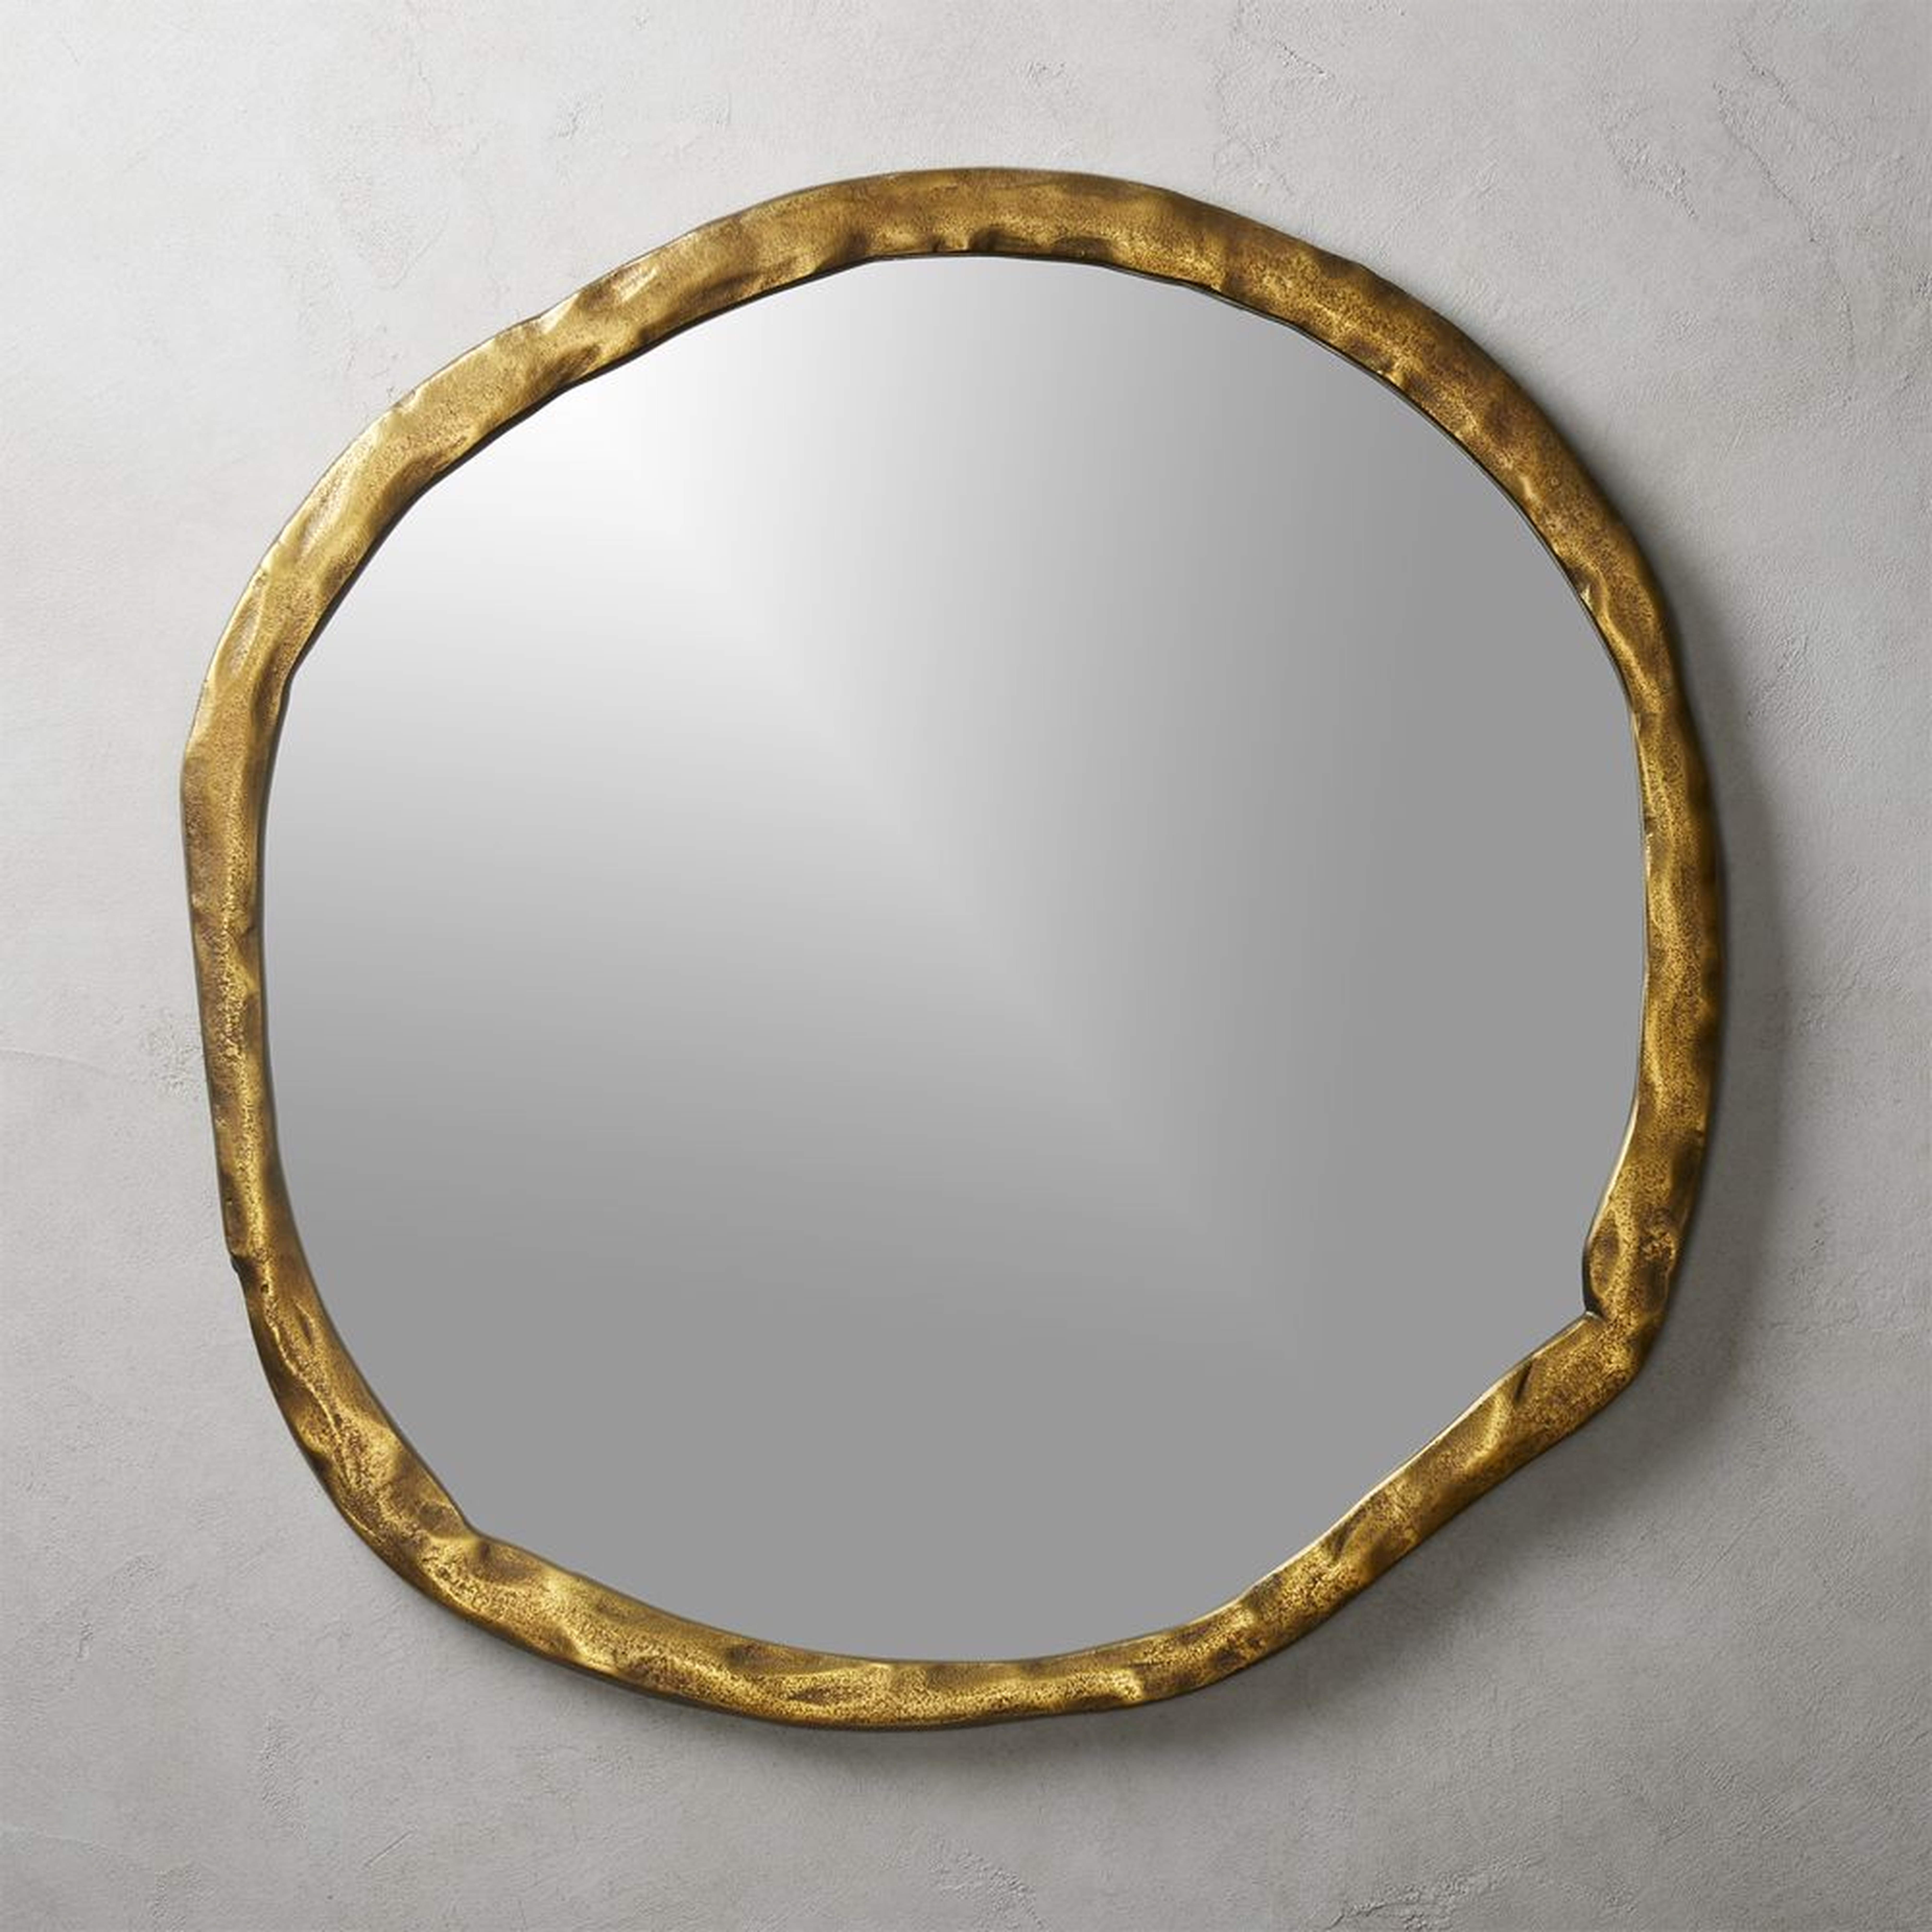 Abel Brass Round Wall Mirror 34" - CB2